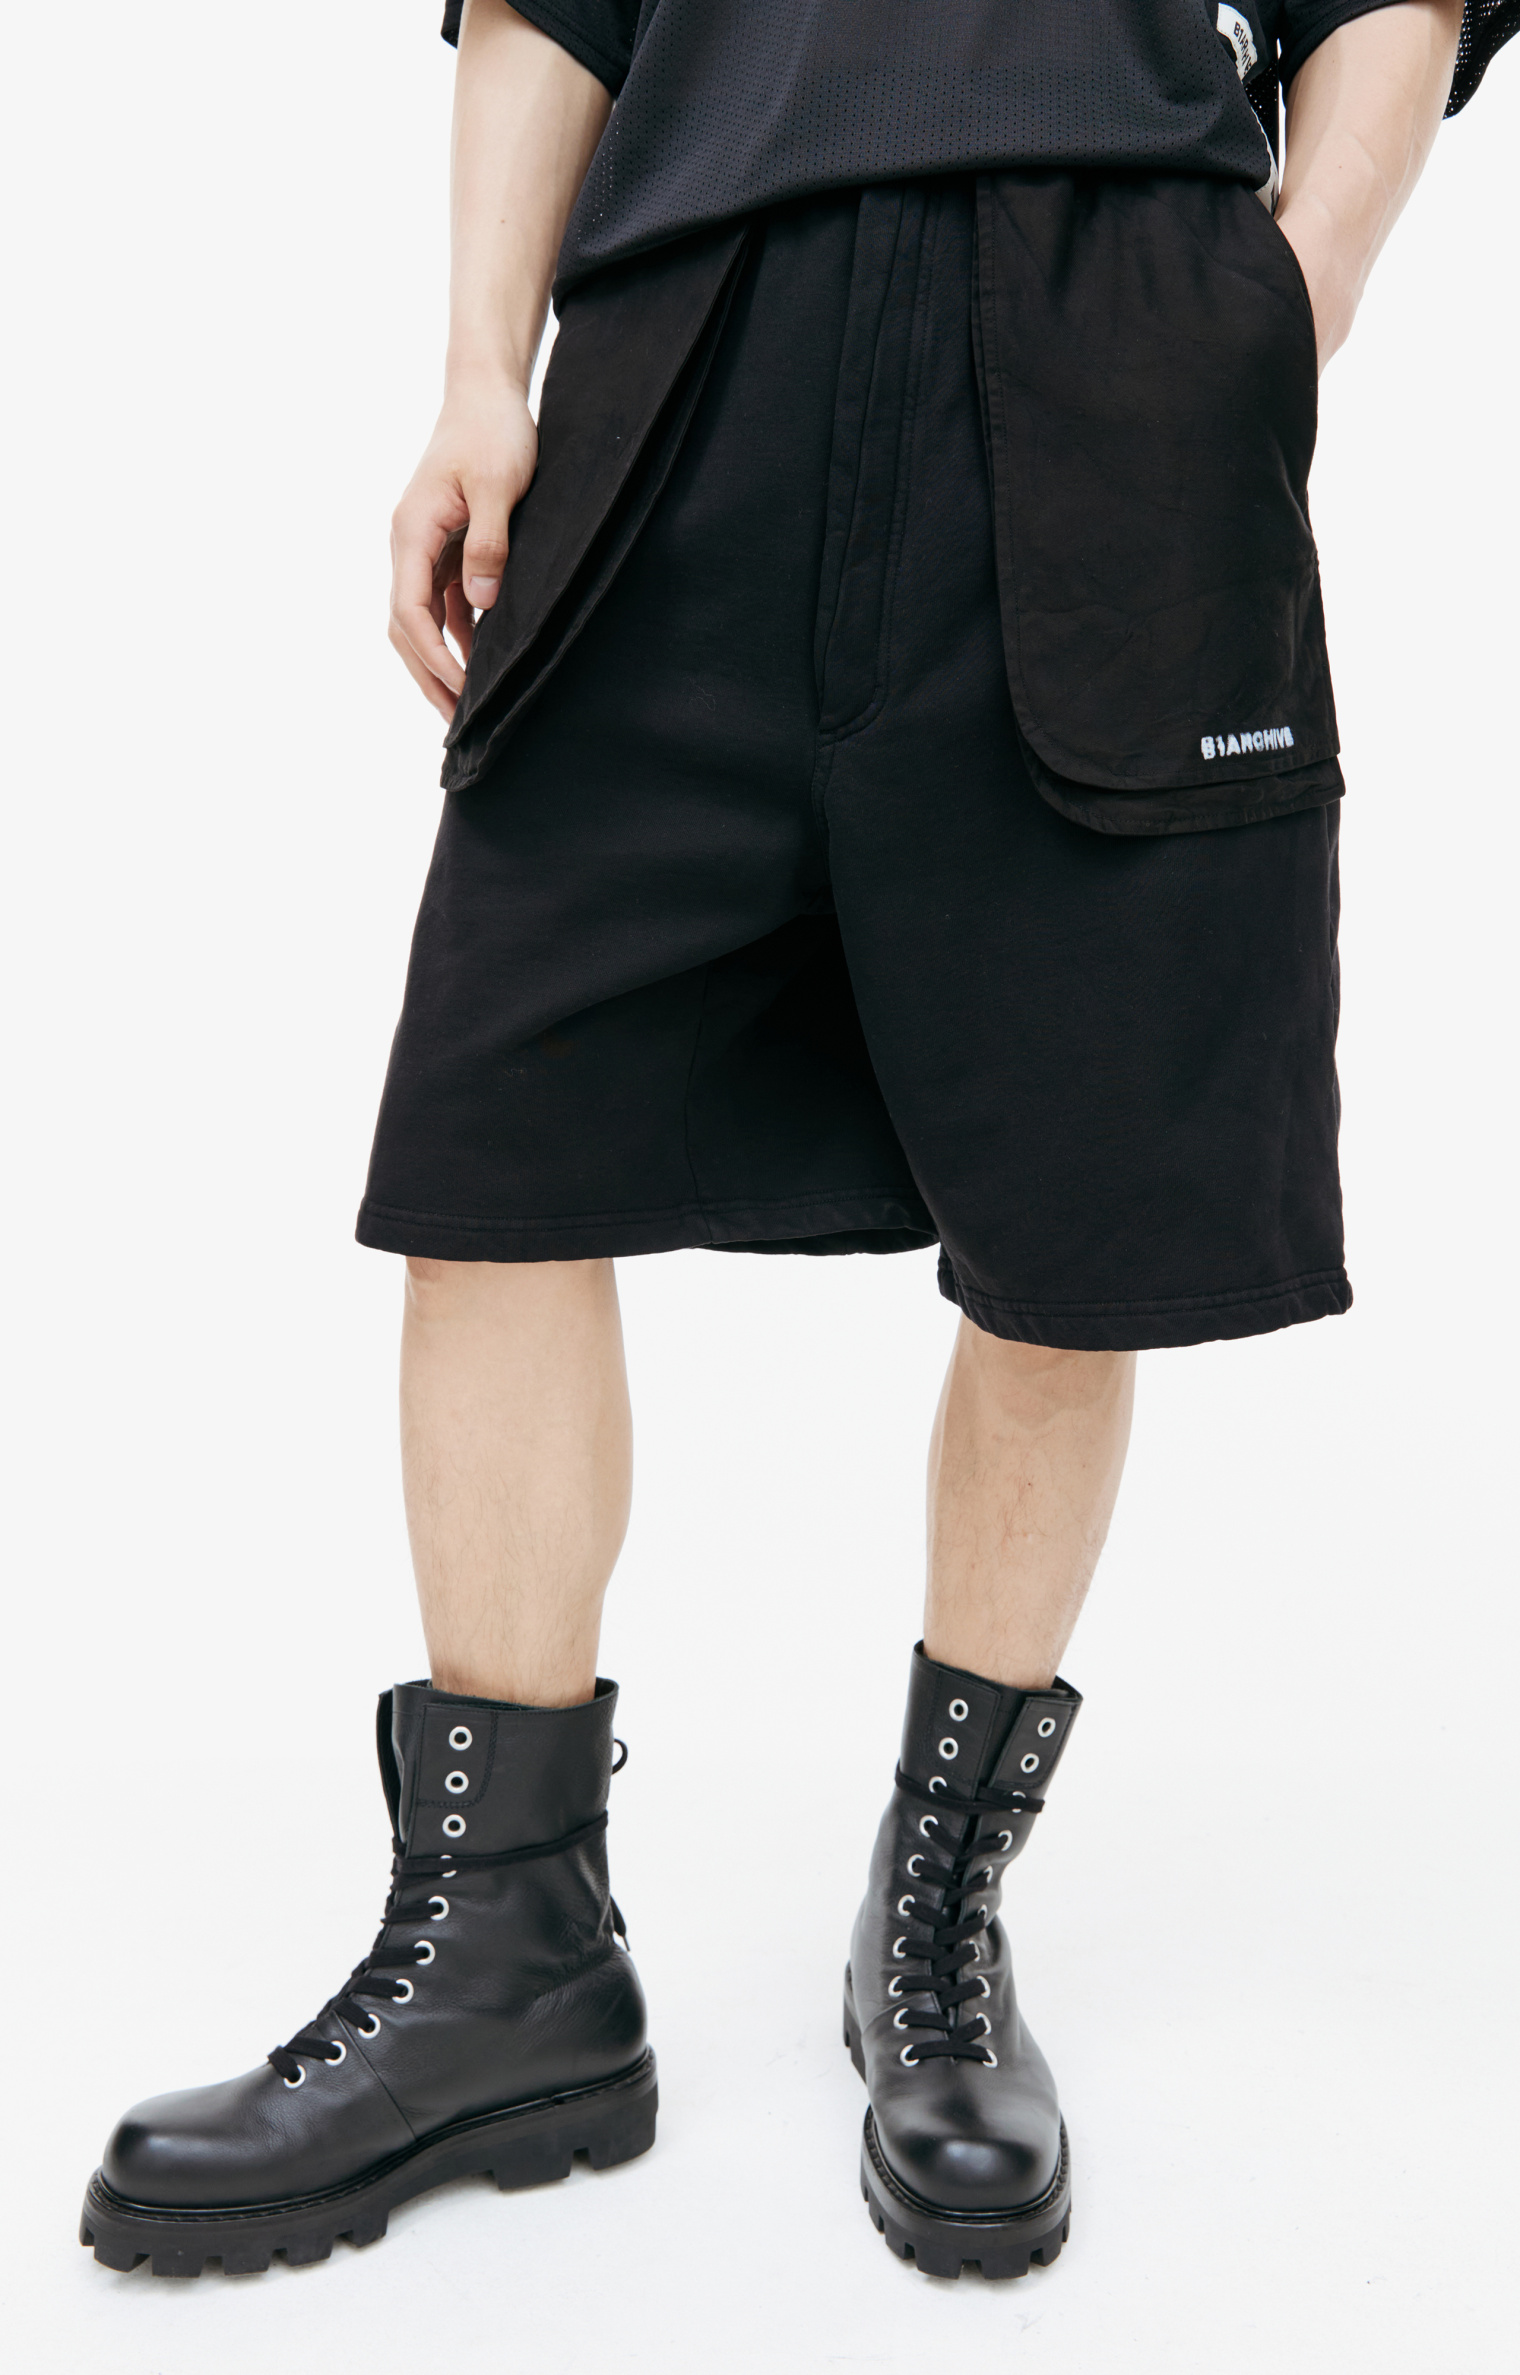 B1ARCHIVE Black cotton shorts